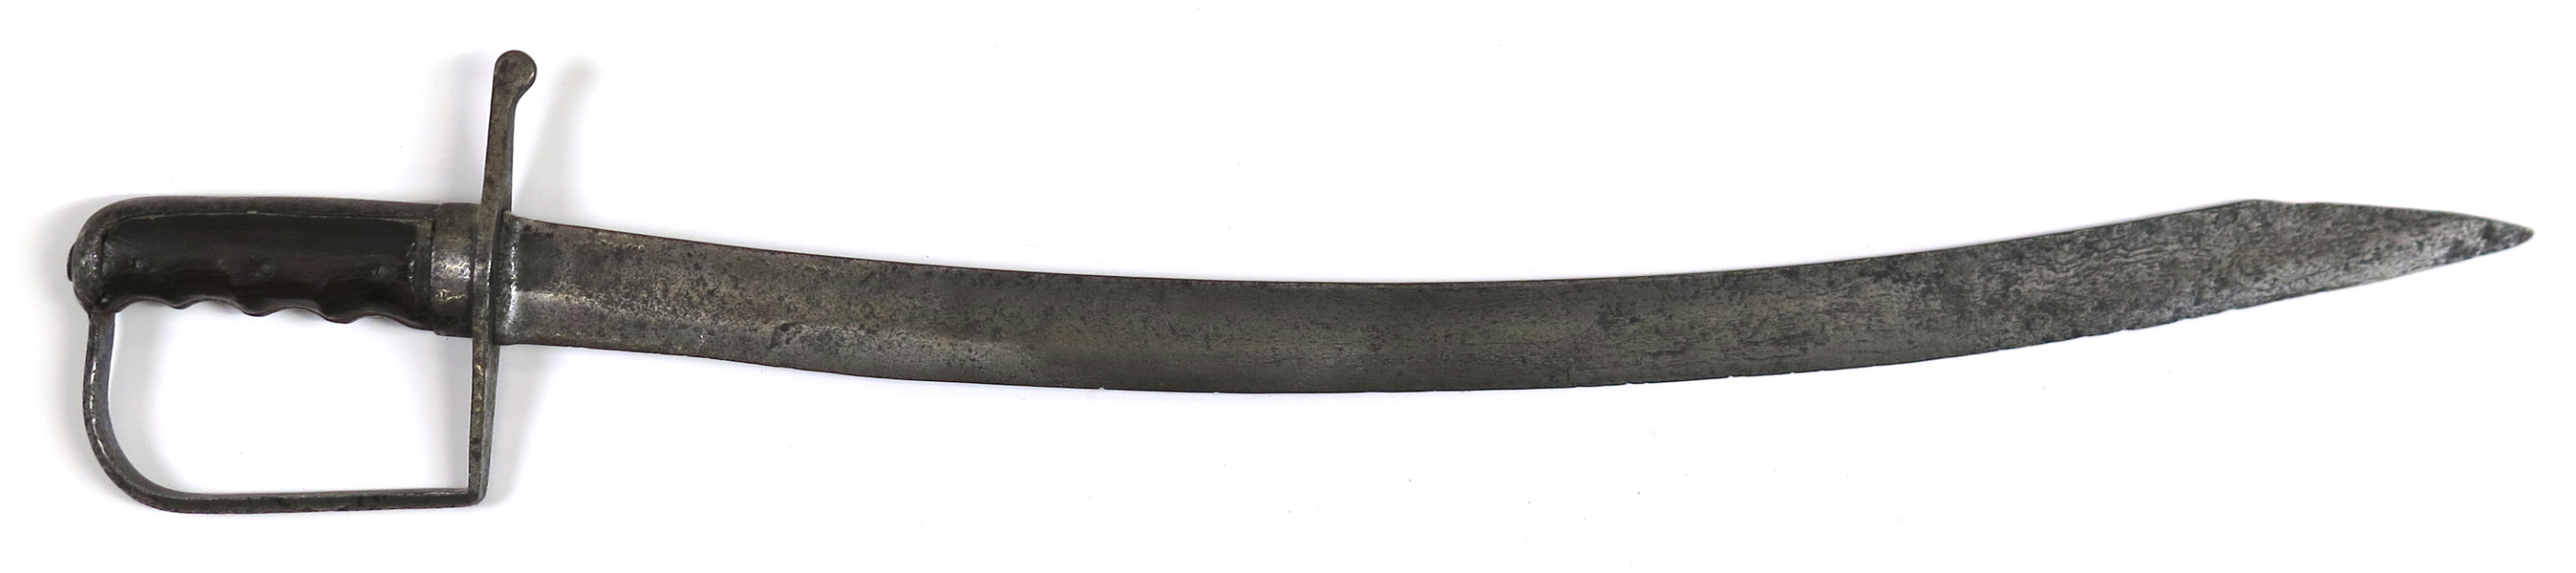 Sabel, stål med valnötsgrepp,  sannolikt för tungt kavalleri, 17-1800-tal, _23268a_8dab2993cfccfd6_lg.jpeg